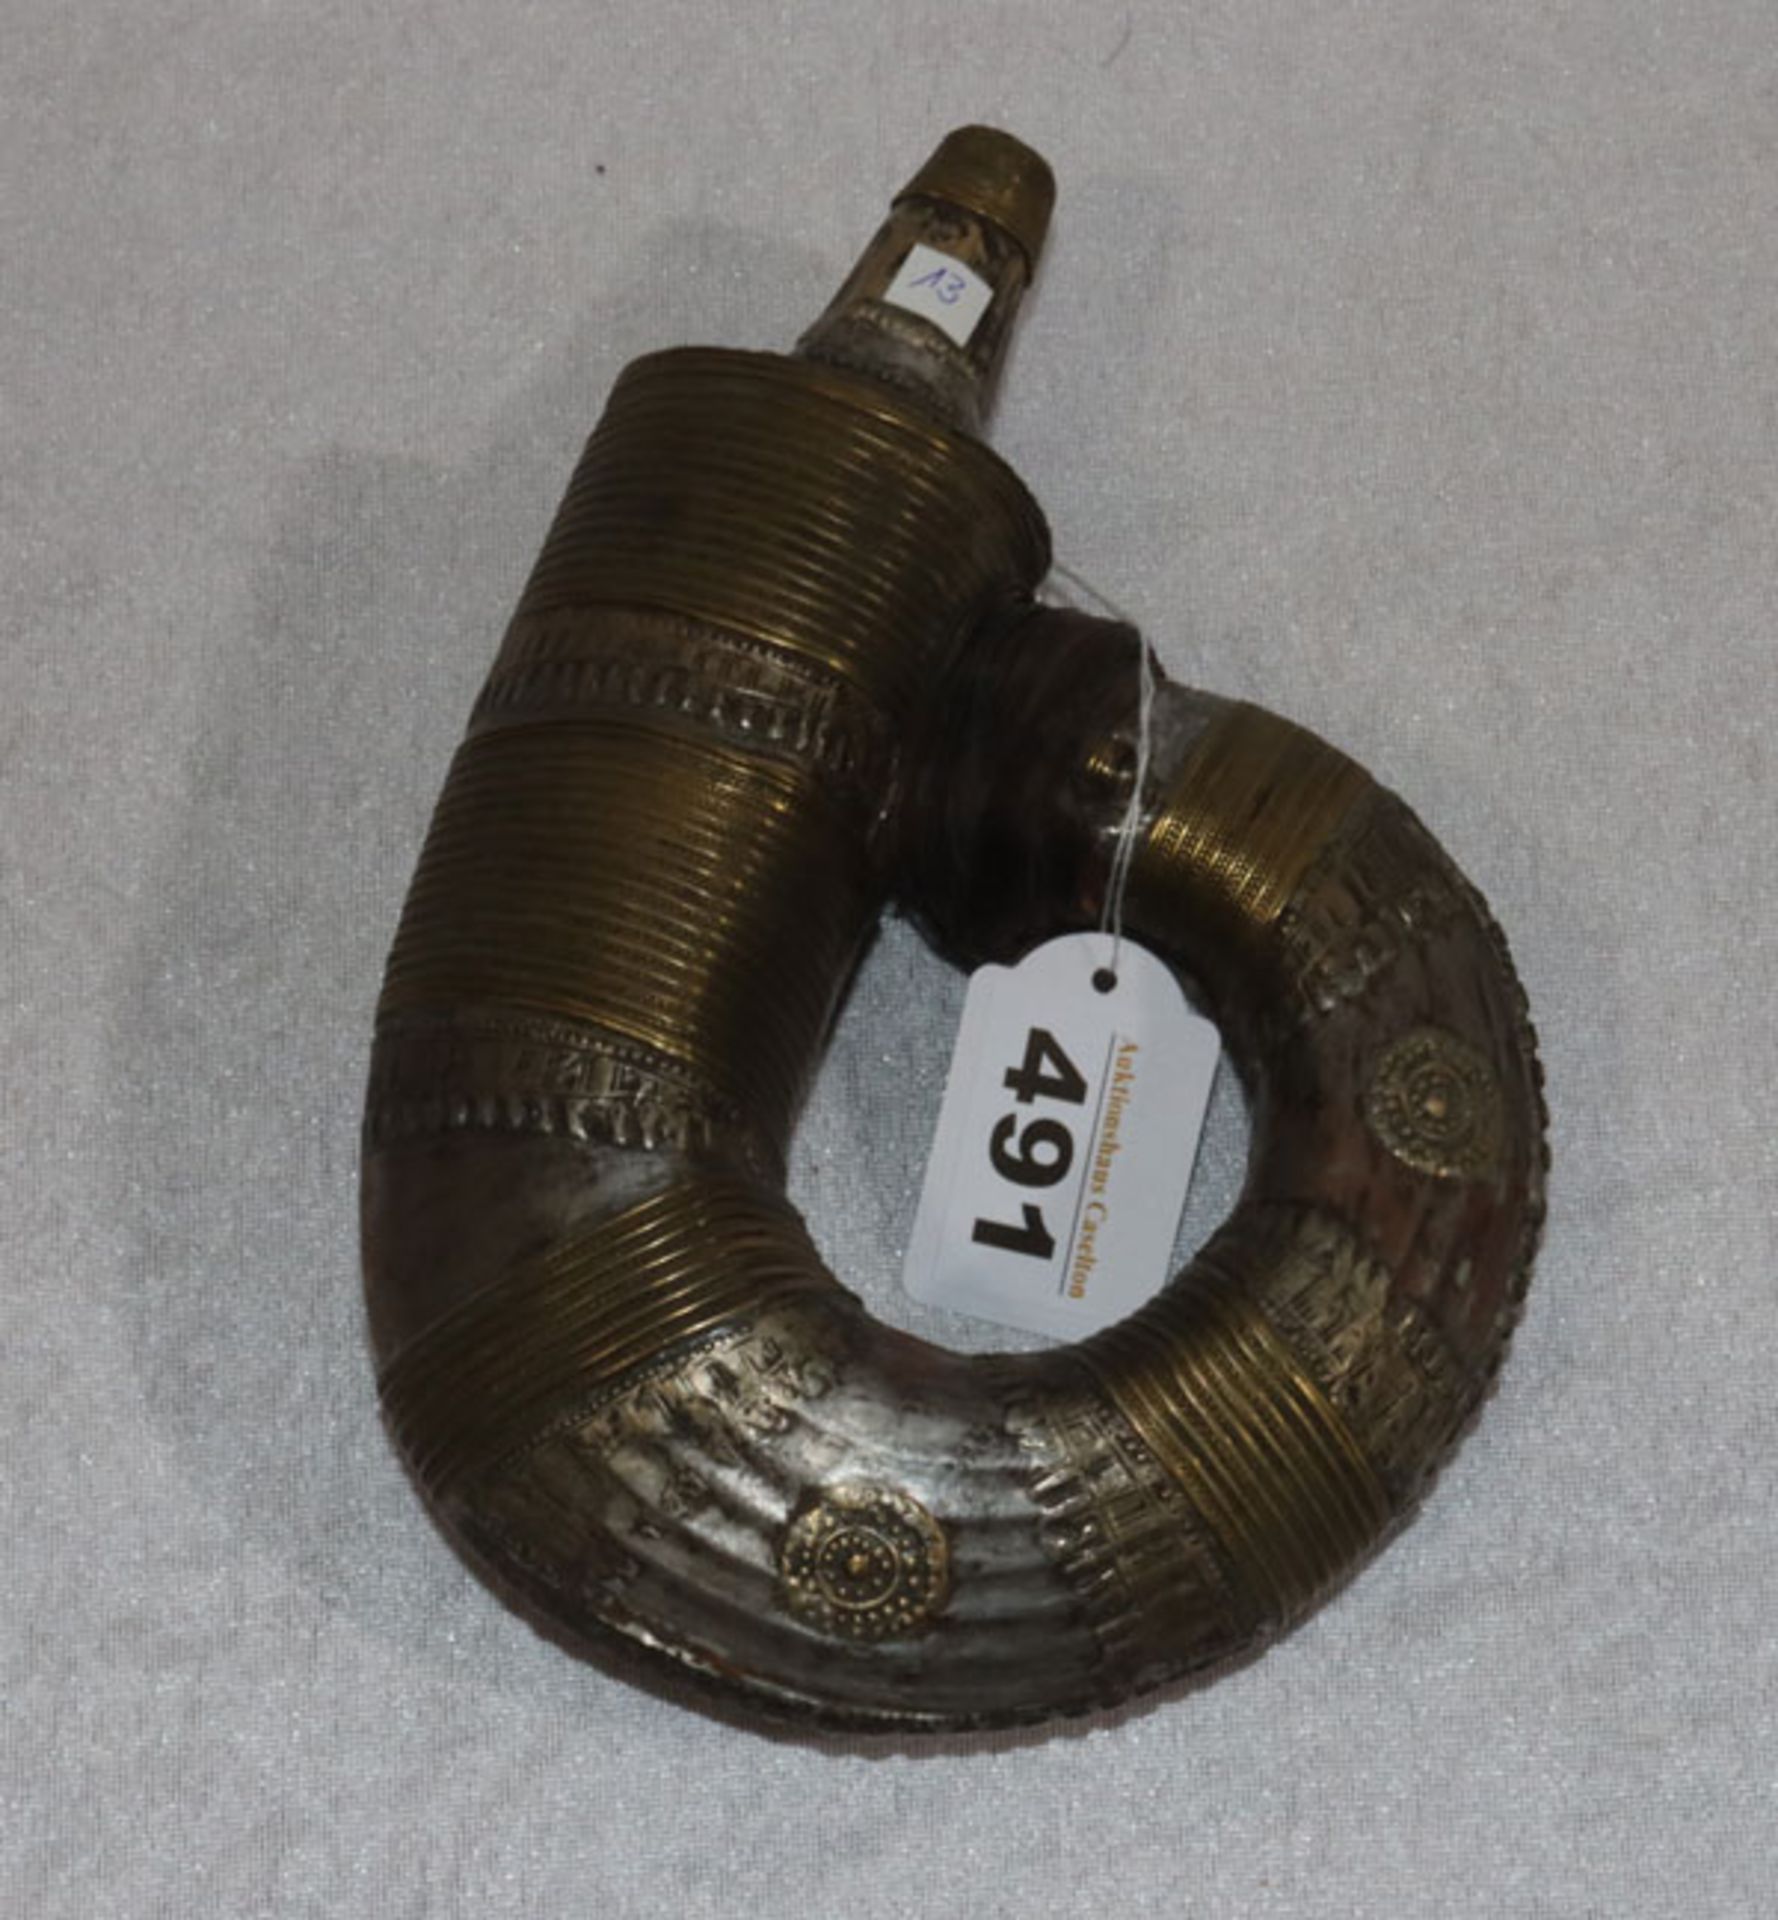 Pulverflasche, arabisch, frühes 19. Jahrhundert, H 21 cm, teils verbeult